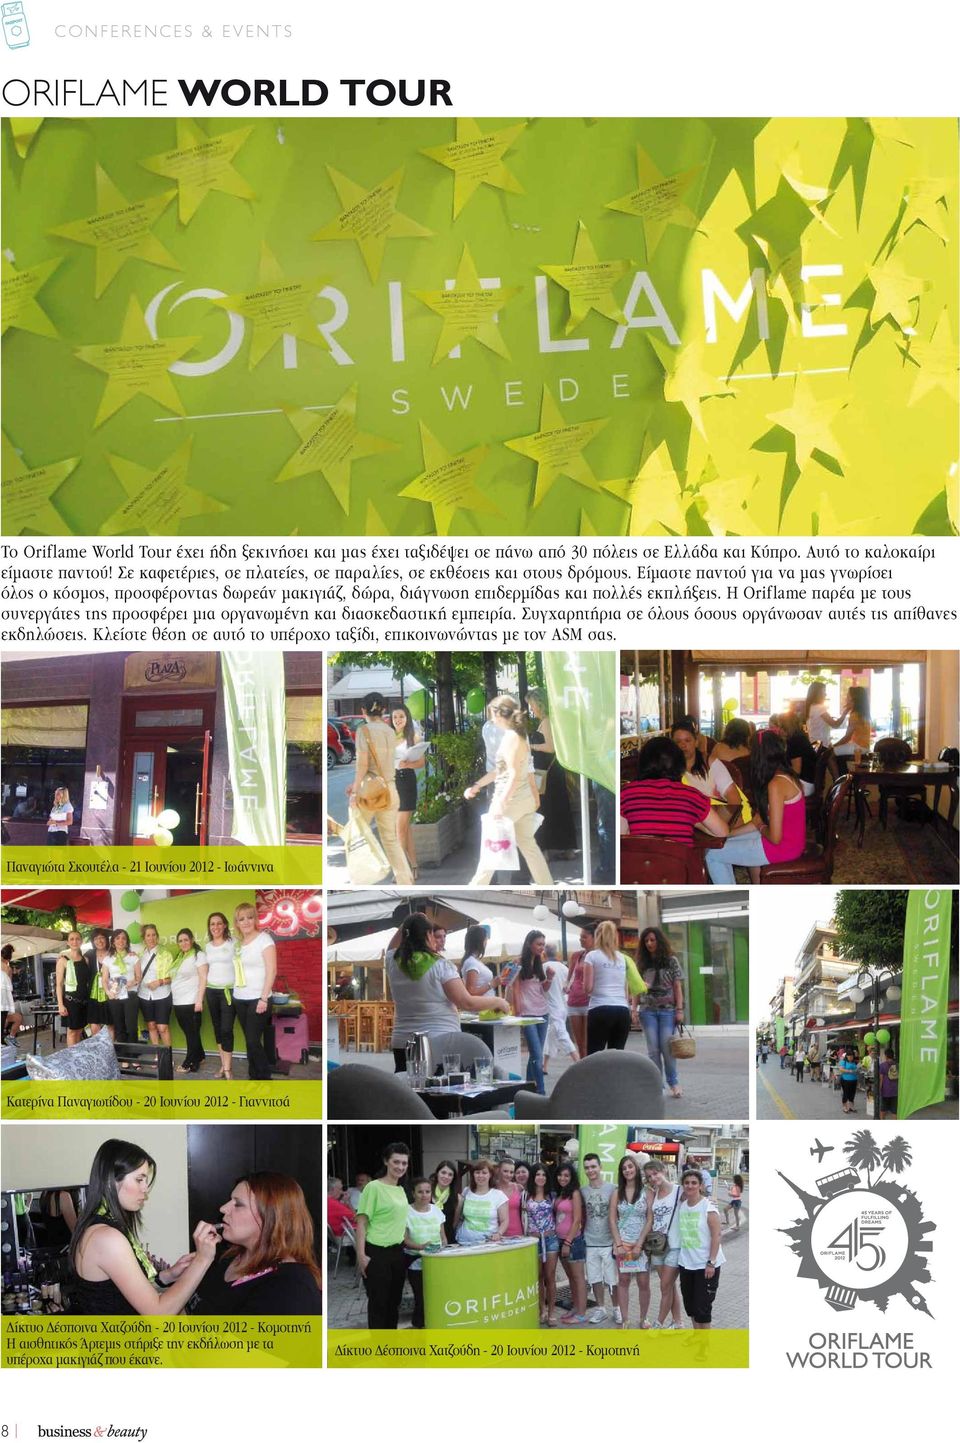 Η Oriflame παρέα με τους συνεργάτες της προσφέρει μια οργανωμένη και διασκεδαστική εμπειρία. Συγχαρητήρια σε όλους όσους οργάνωσαν αυτές τις απίθανες εκδηλώσεις.